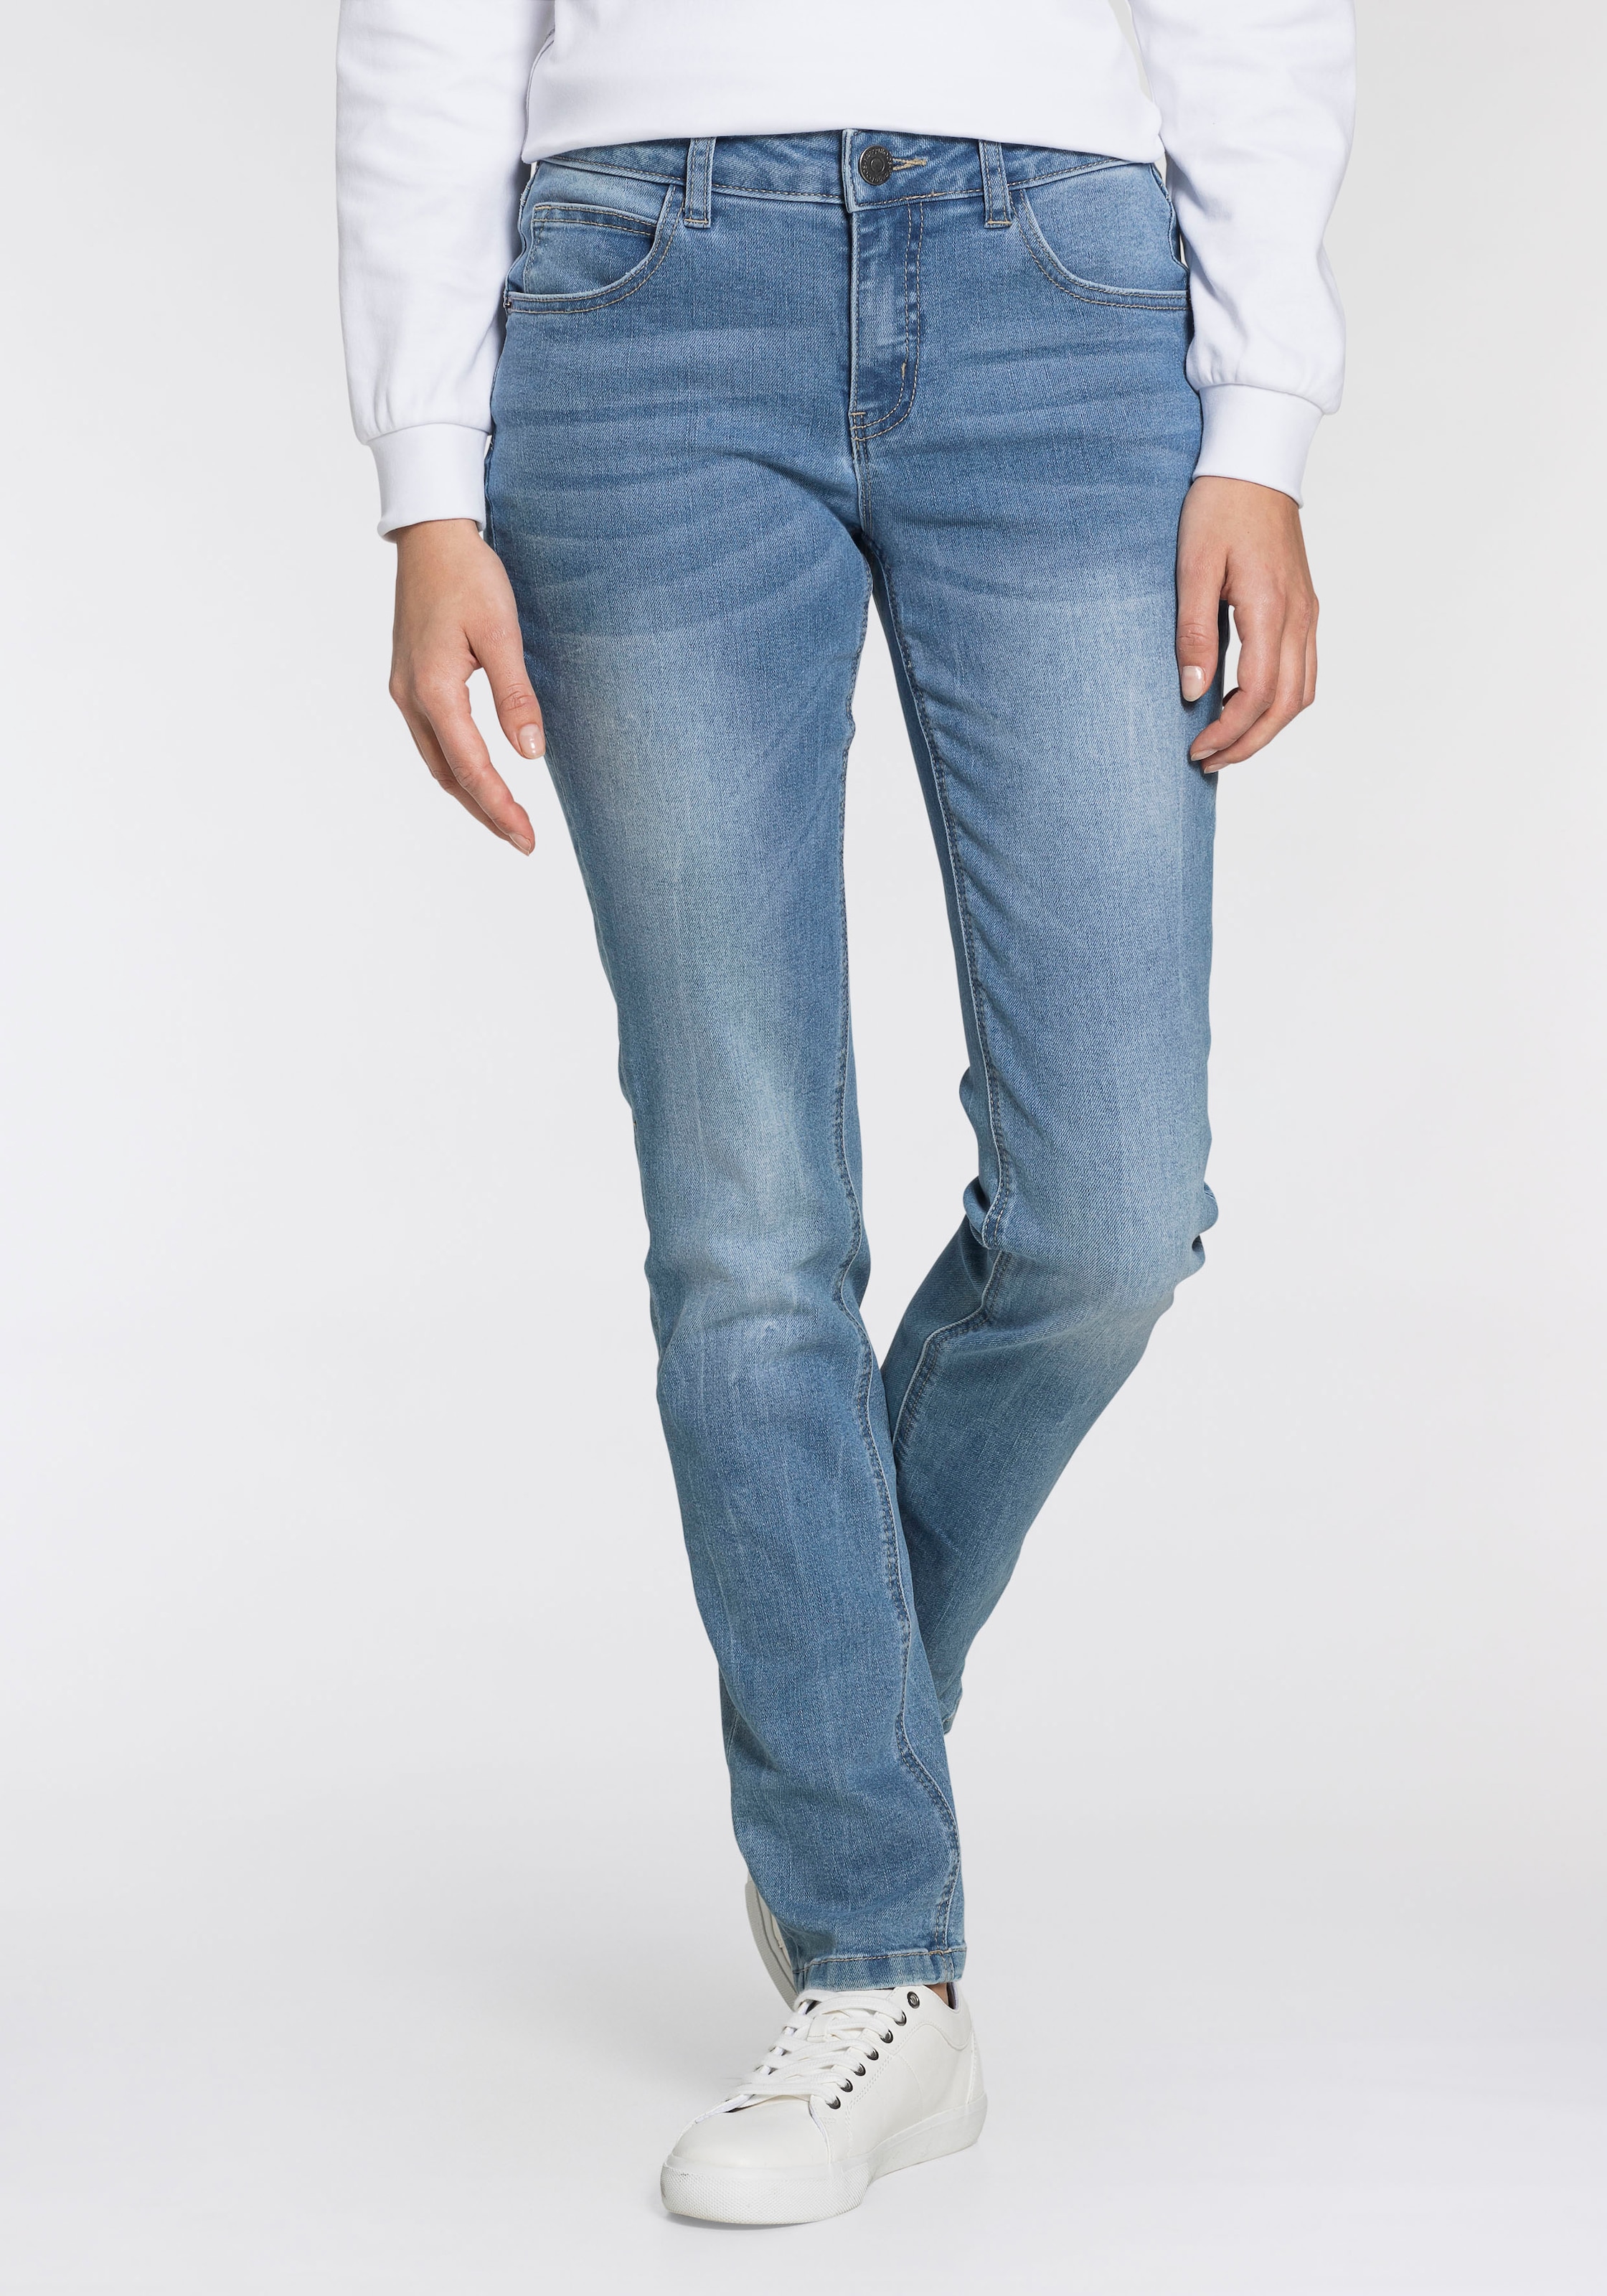 KangaROOS Relax-fit-Jeans bestellen HIGH »RELAX-FIT WAIST« online